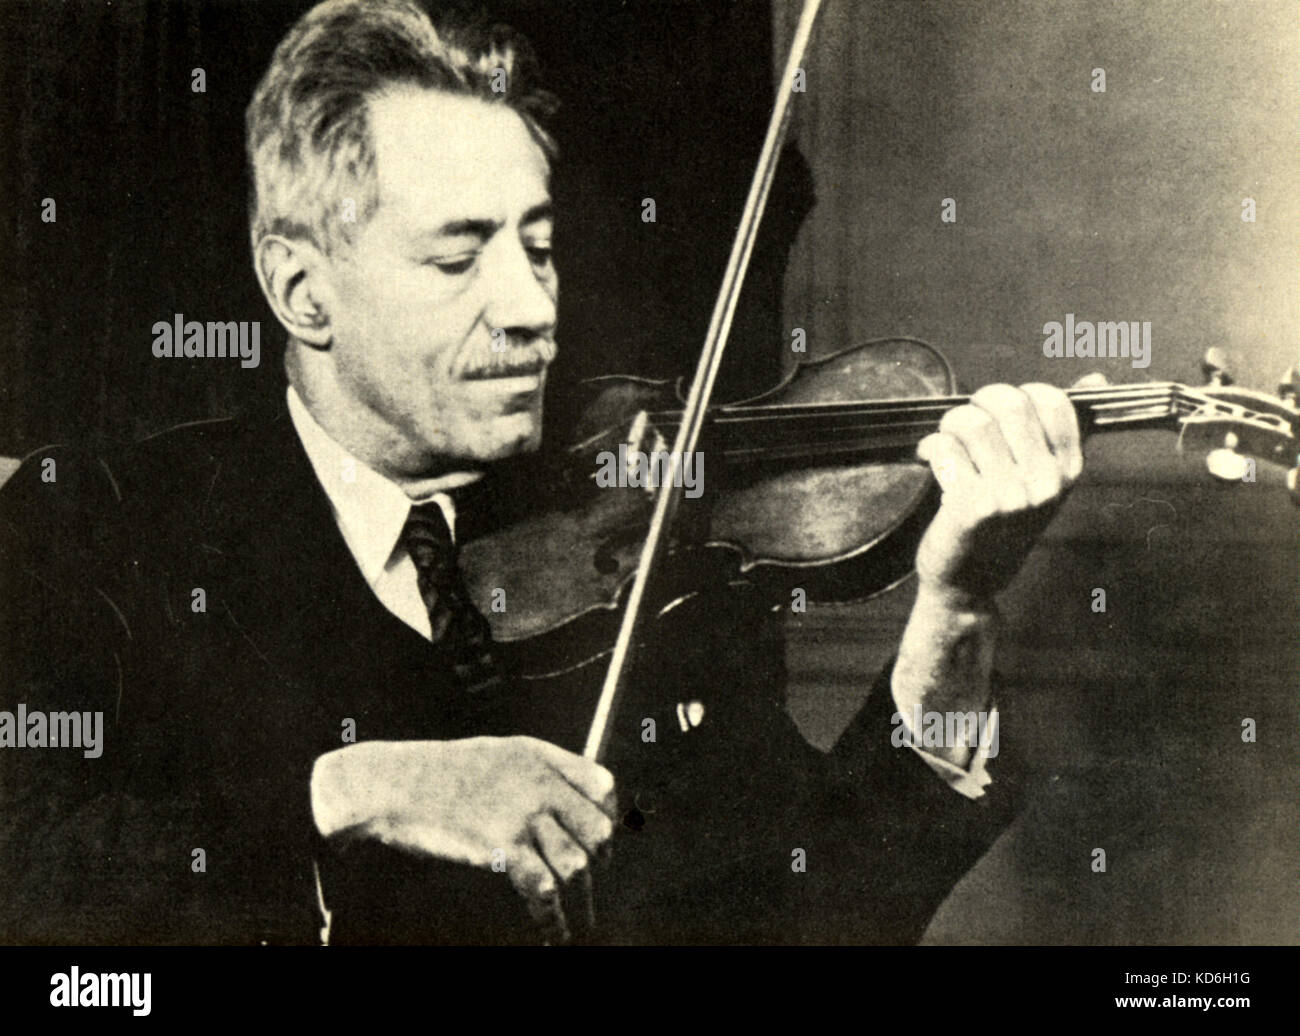 Fritz Kreisler à jouer du violon. Le violoniste et compositeur autrichien (1875-1962). Photo : Concert & Artists' Corp. Banque D'Images